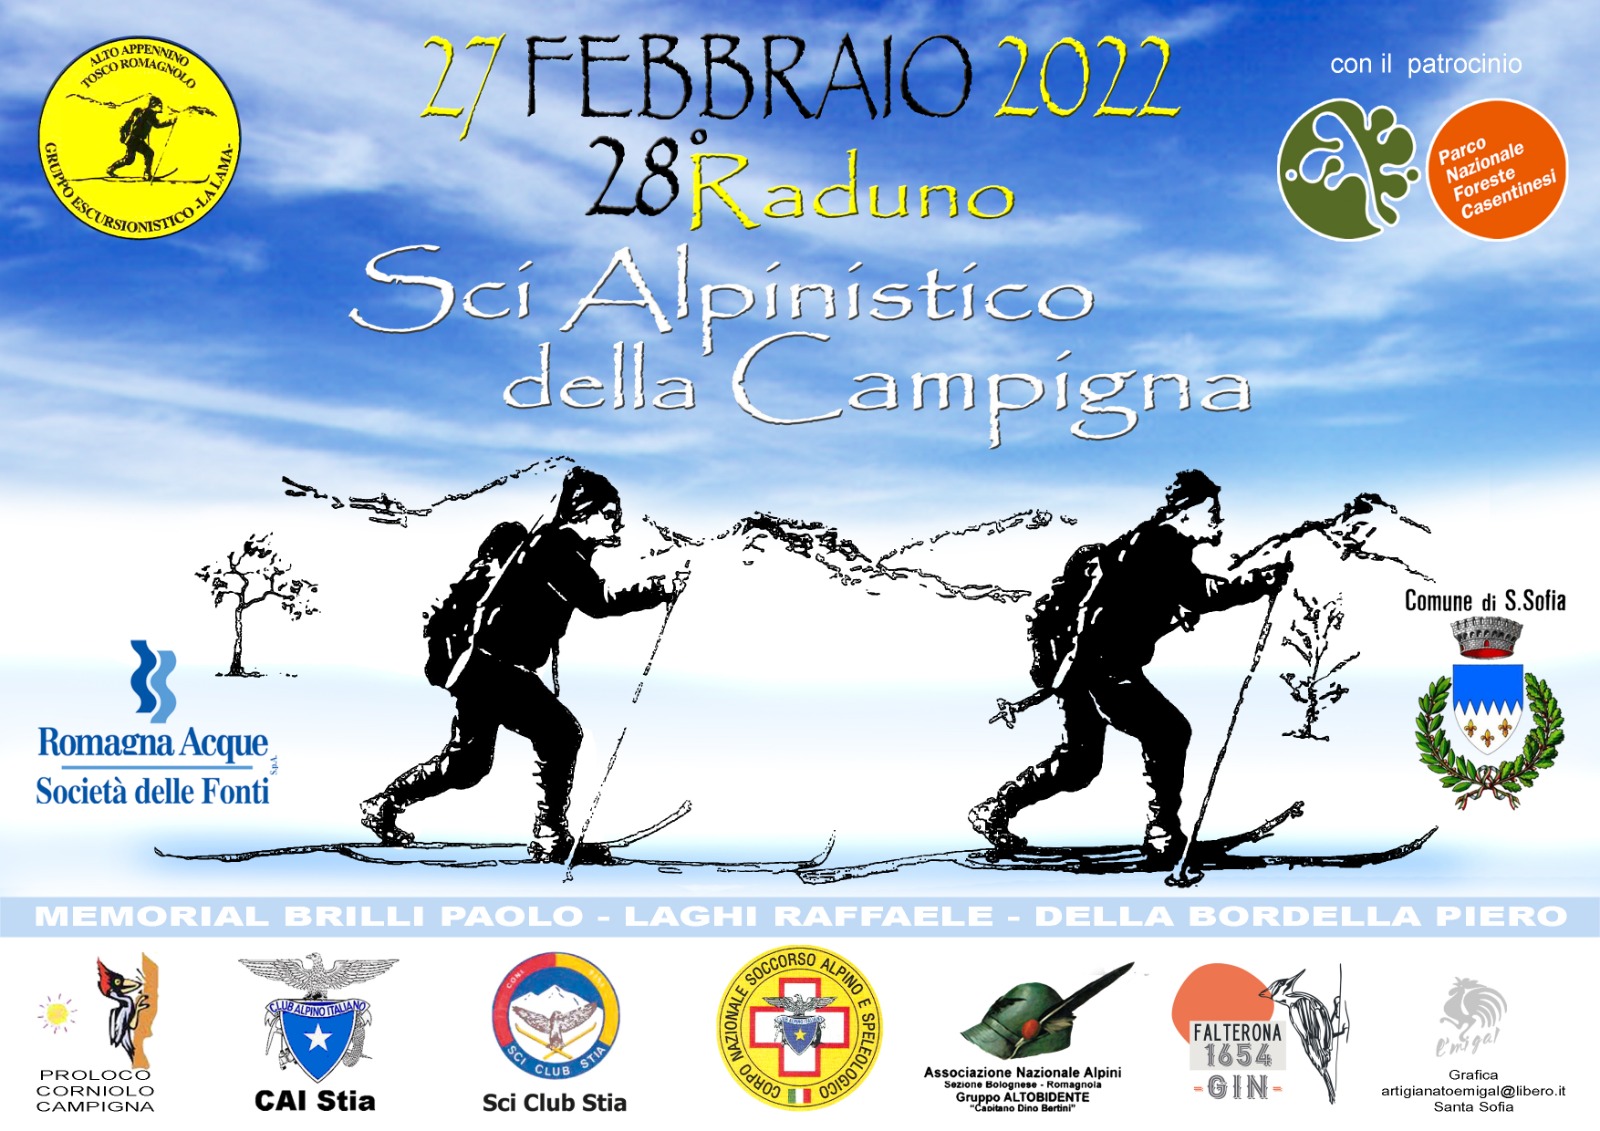 Foreste Casentinesi: 28° edizione “Raduno scialpinistico della Campigna”